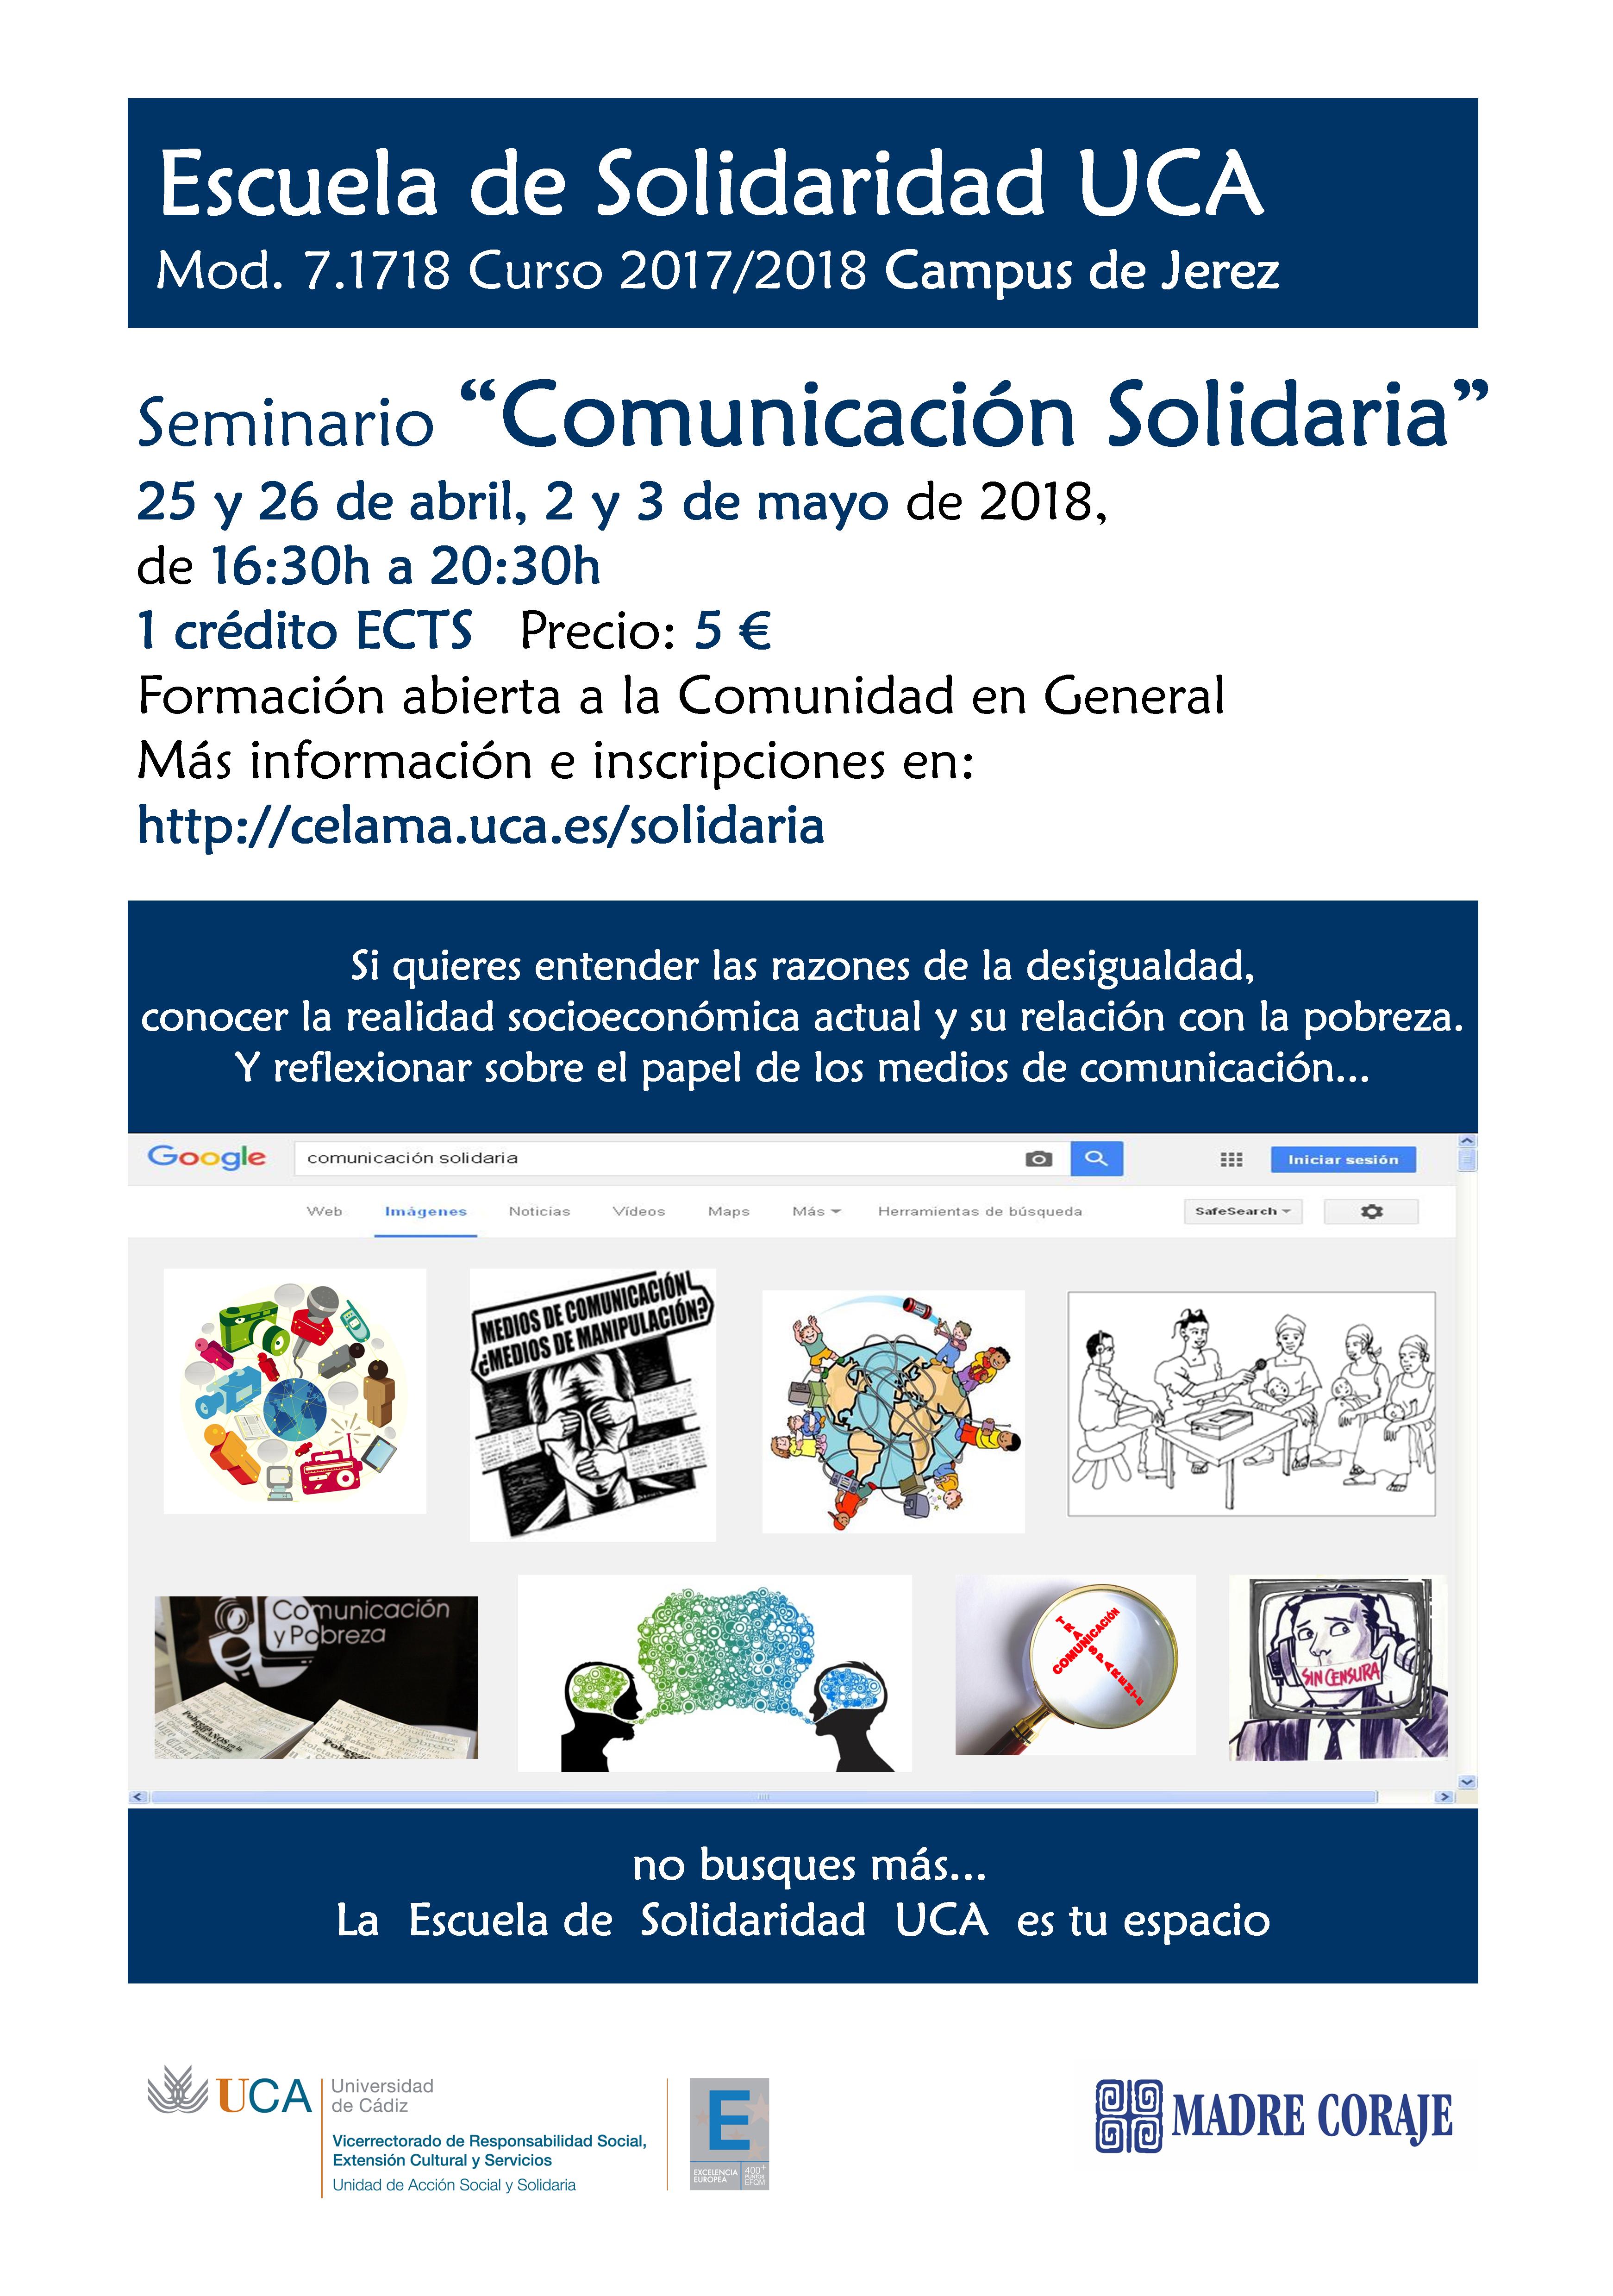 25 y 26 de abril, 2 y 3 de mayo. Campus de Jerez. Escuela de Solidaridad UCA. Seminario Comunicación Solidaria